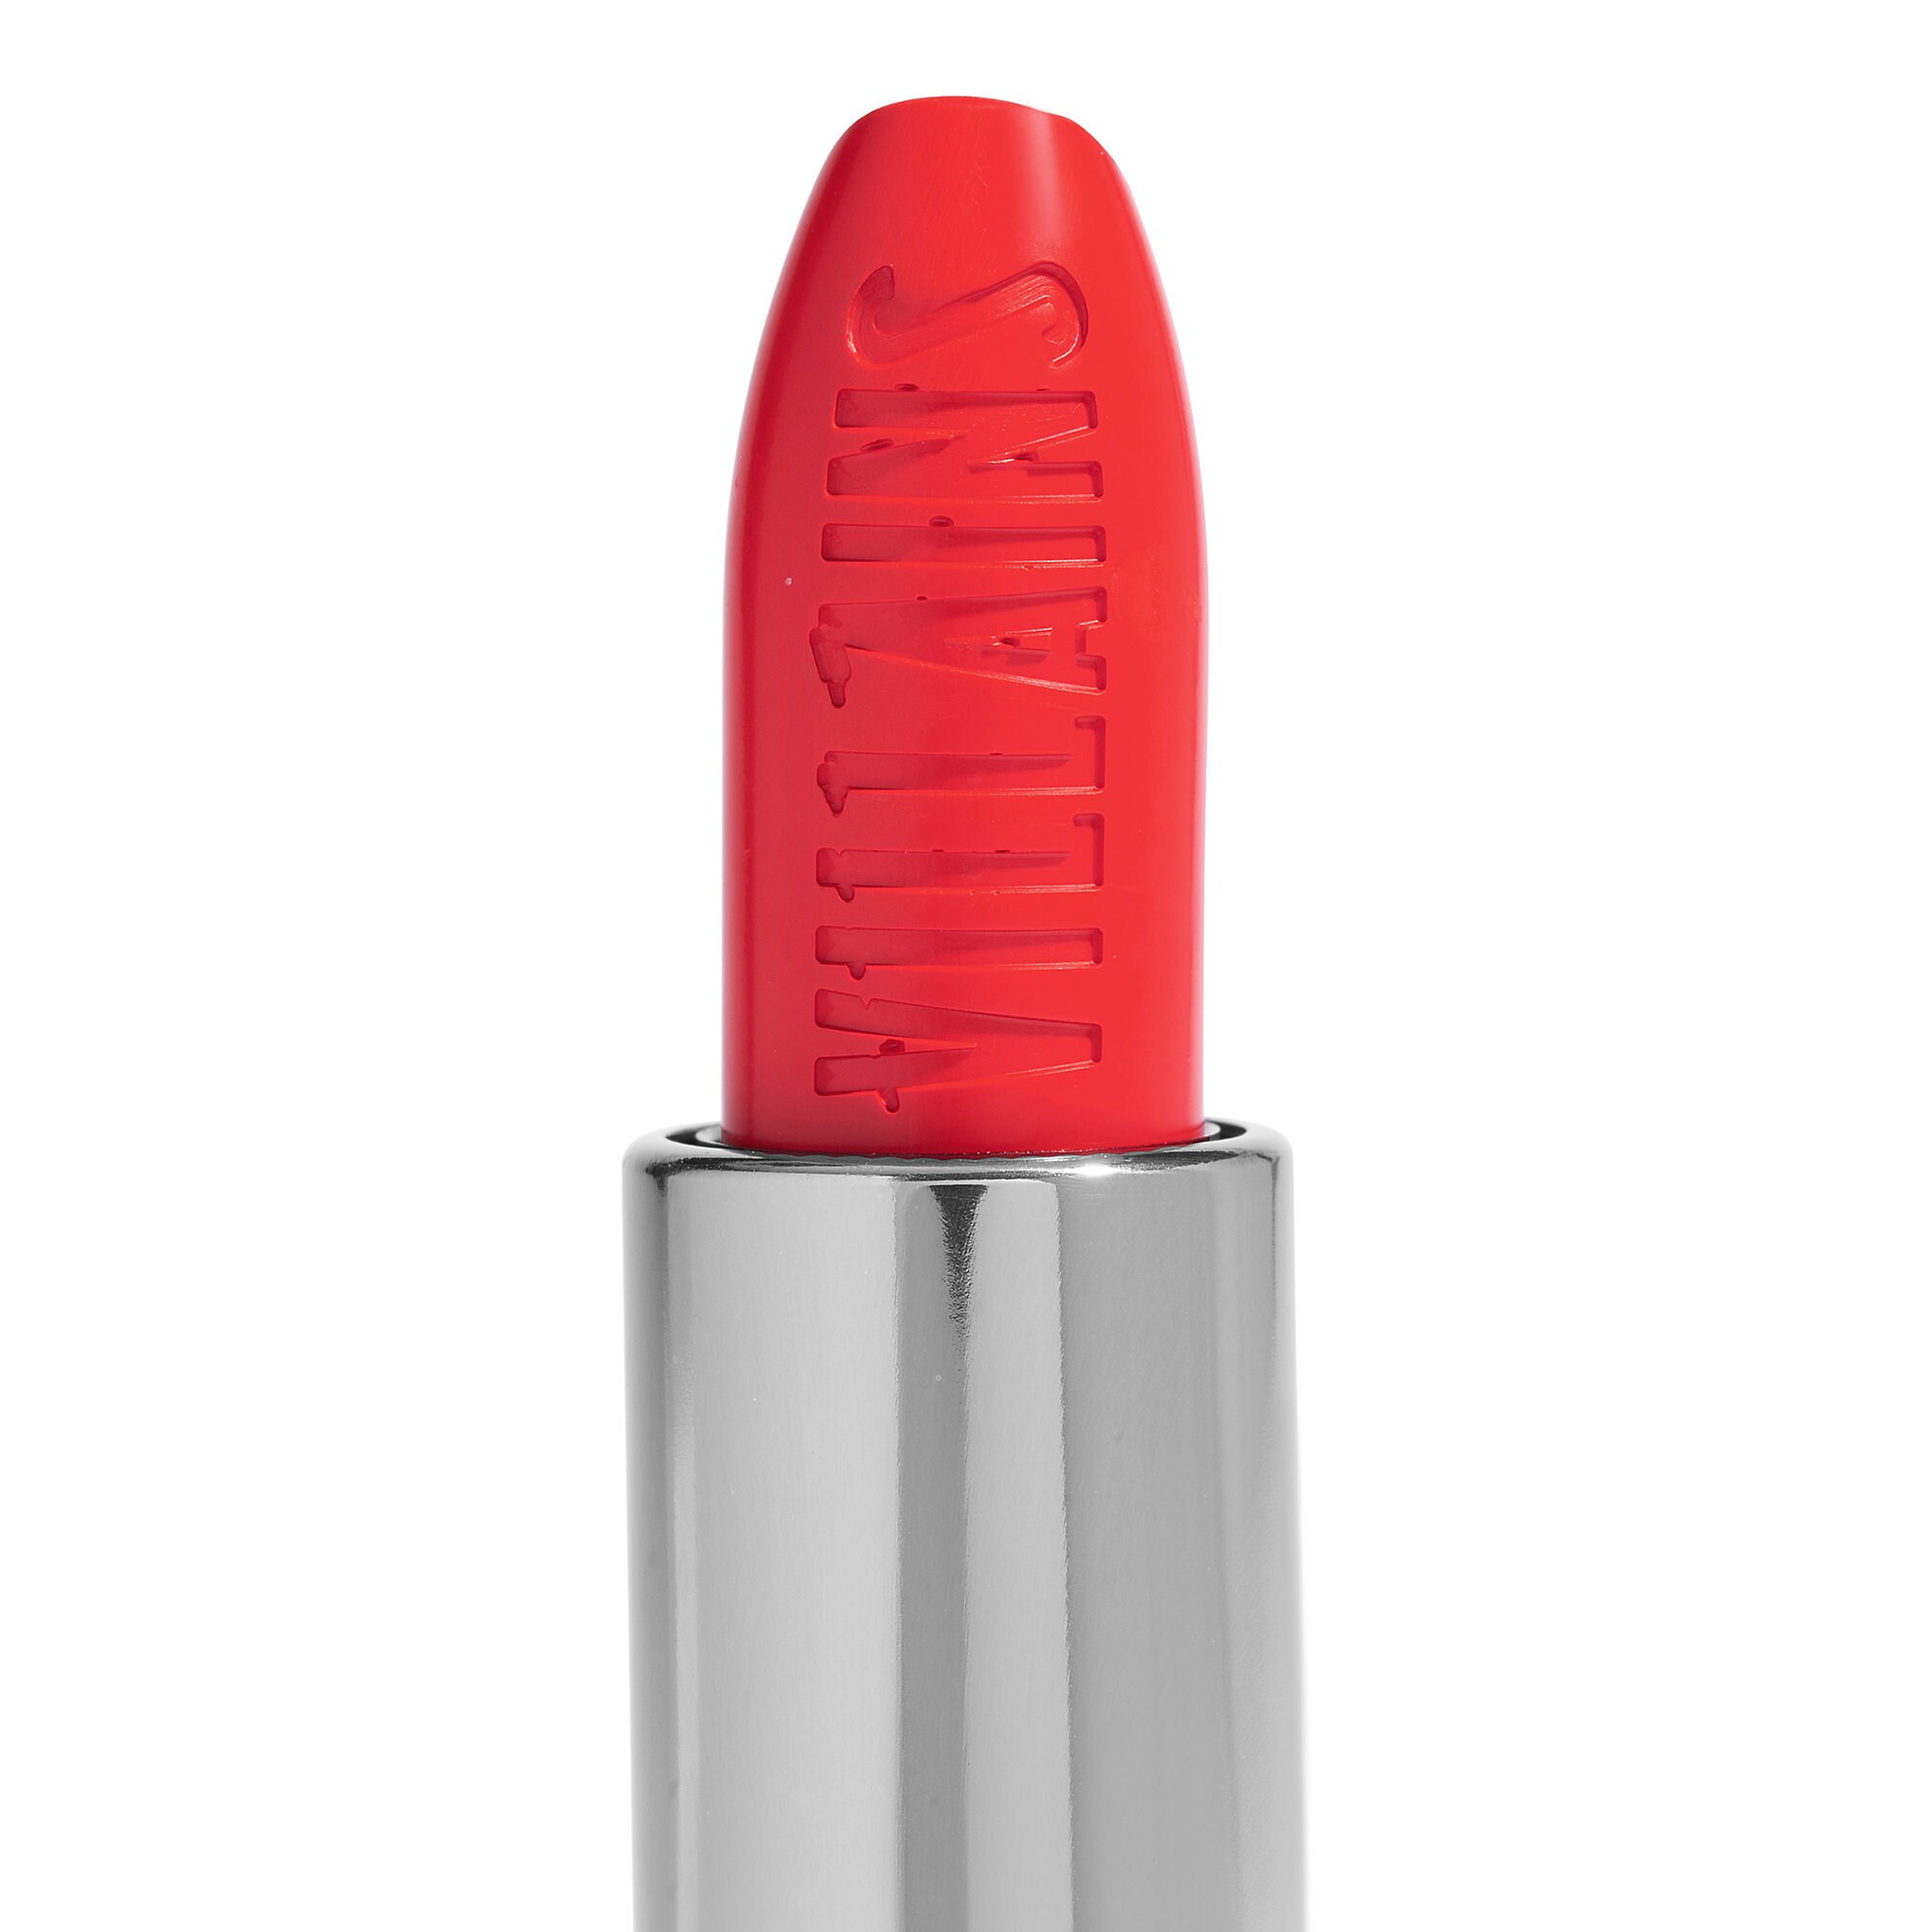 Cruella Lux Lipstick by ColourPop - Creme